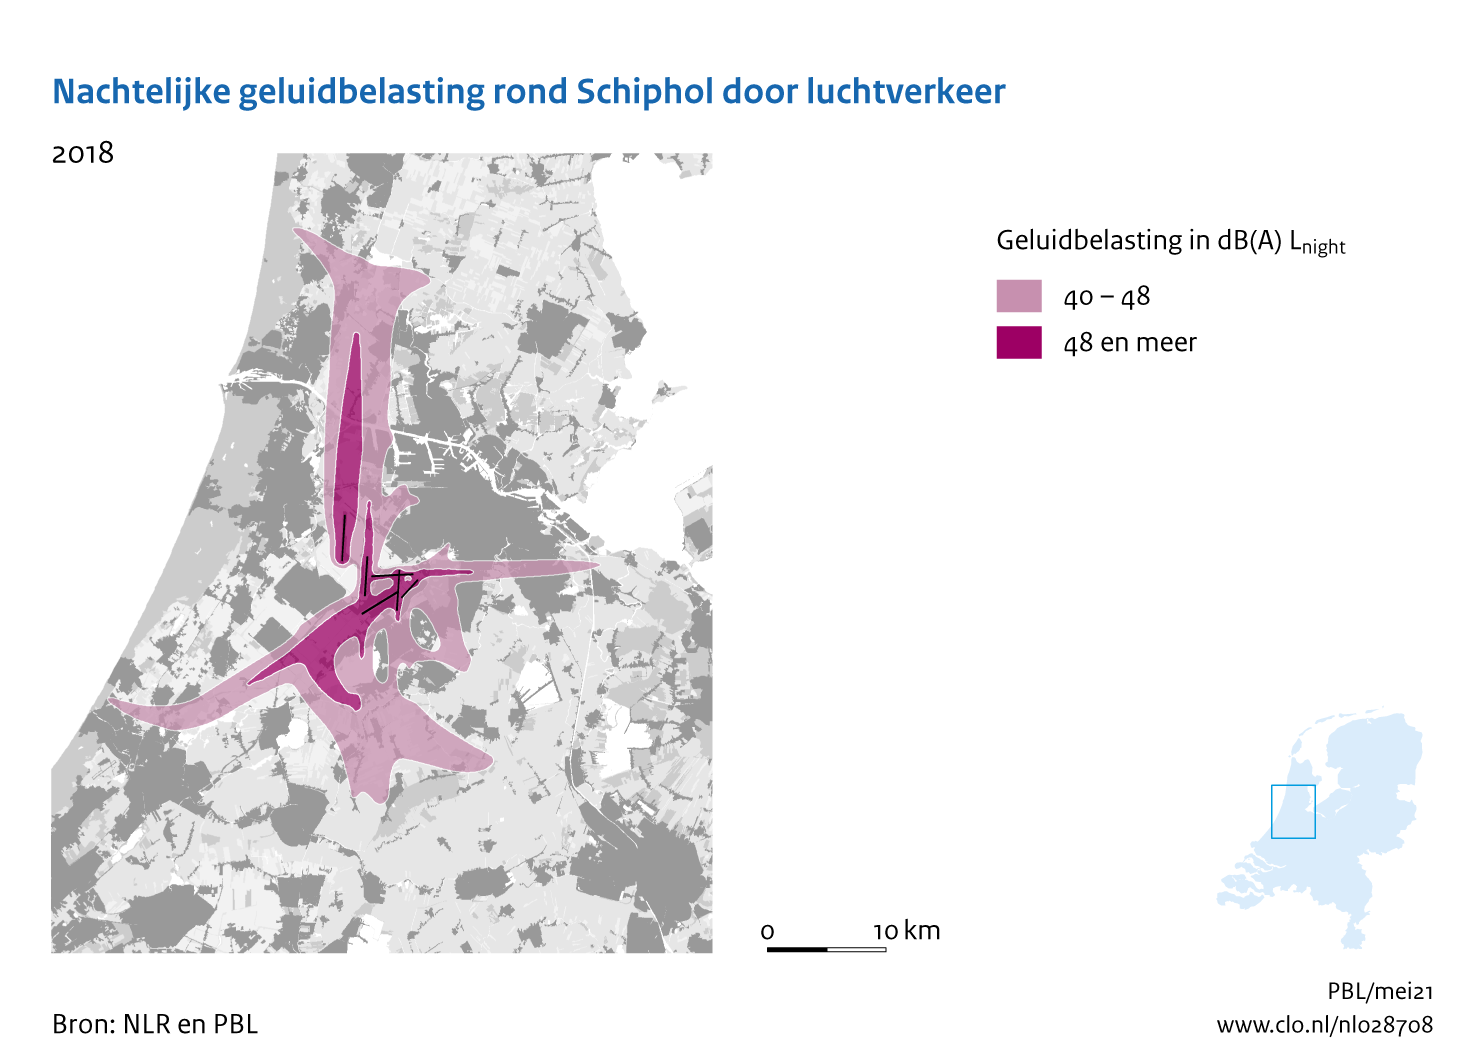 Figuur Nachtelijke geluidbelasting rond Schiphol door luchtverkeer, 2018. In de rest van de tekst wordt deze figuur uitgebreider uitgelegd.